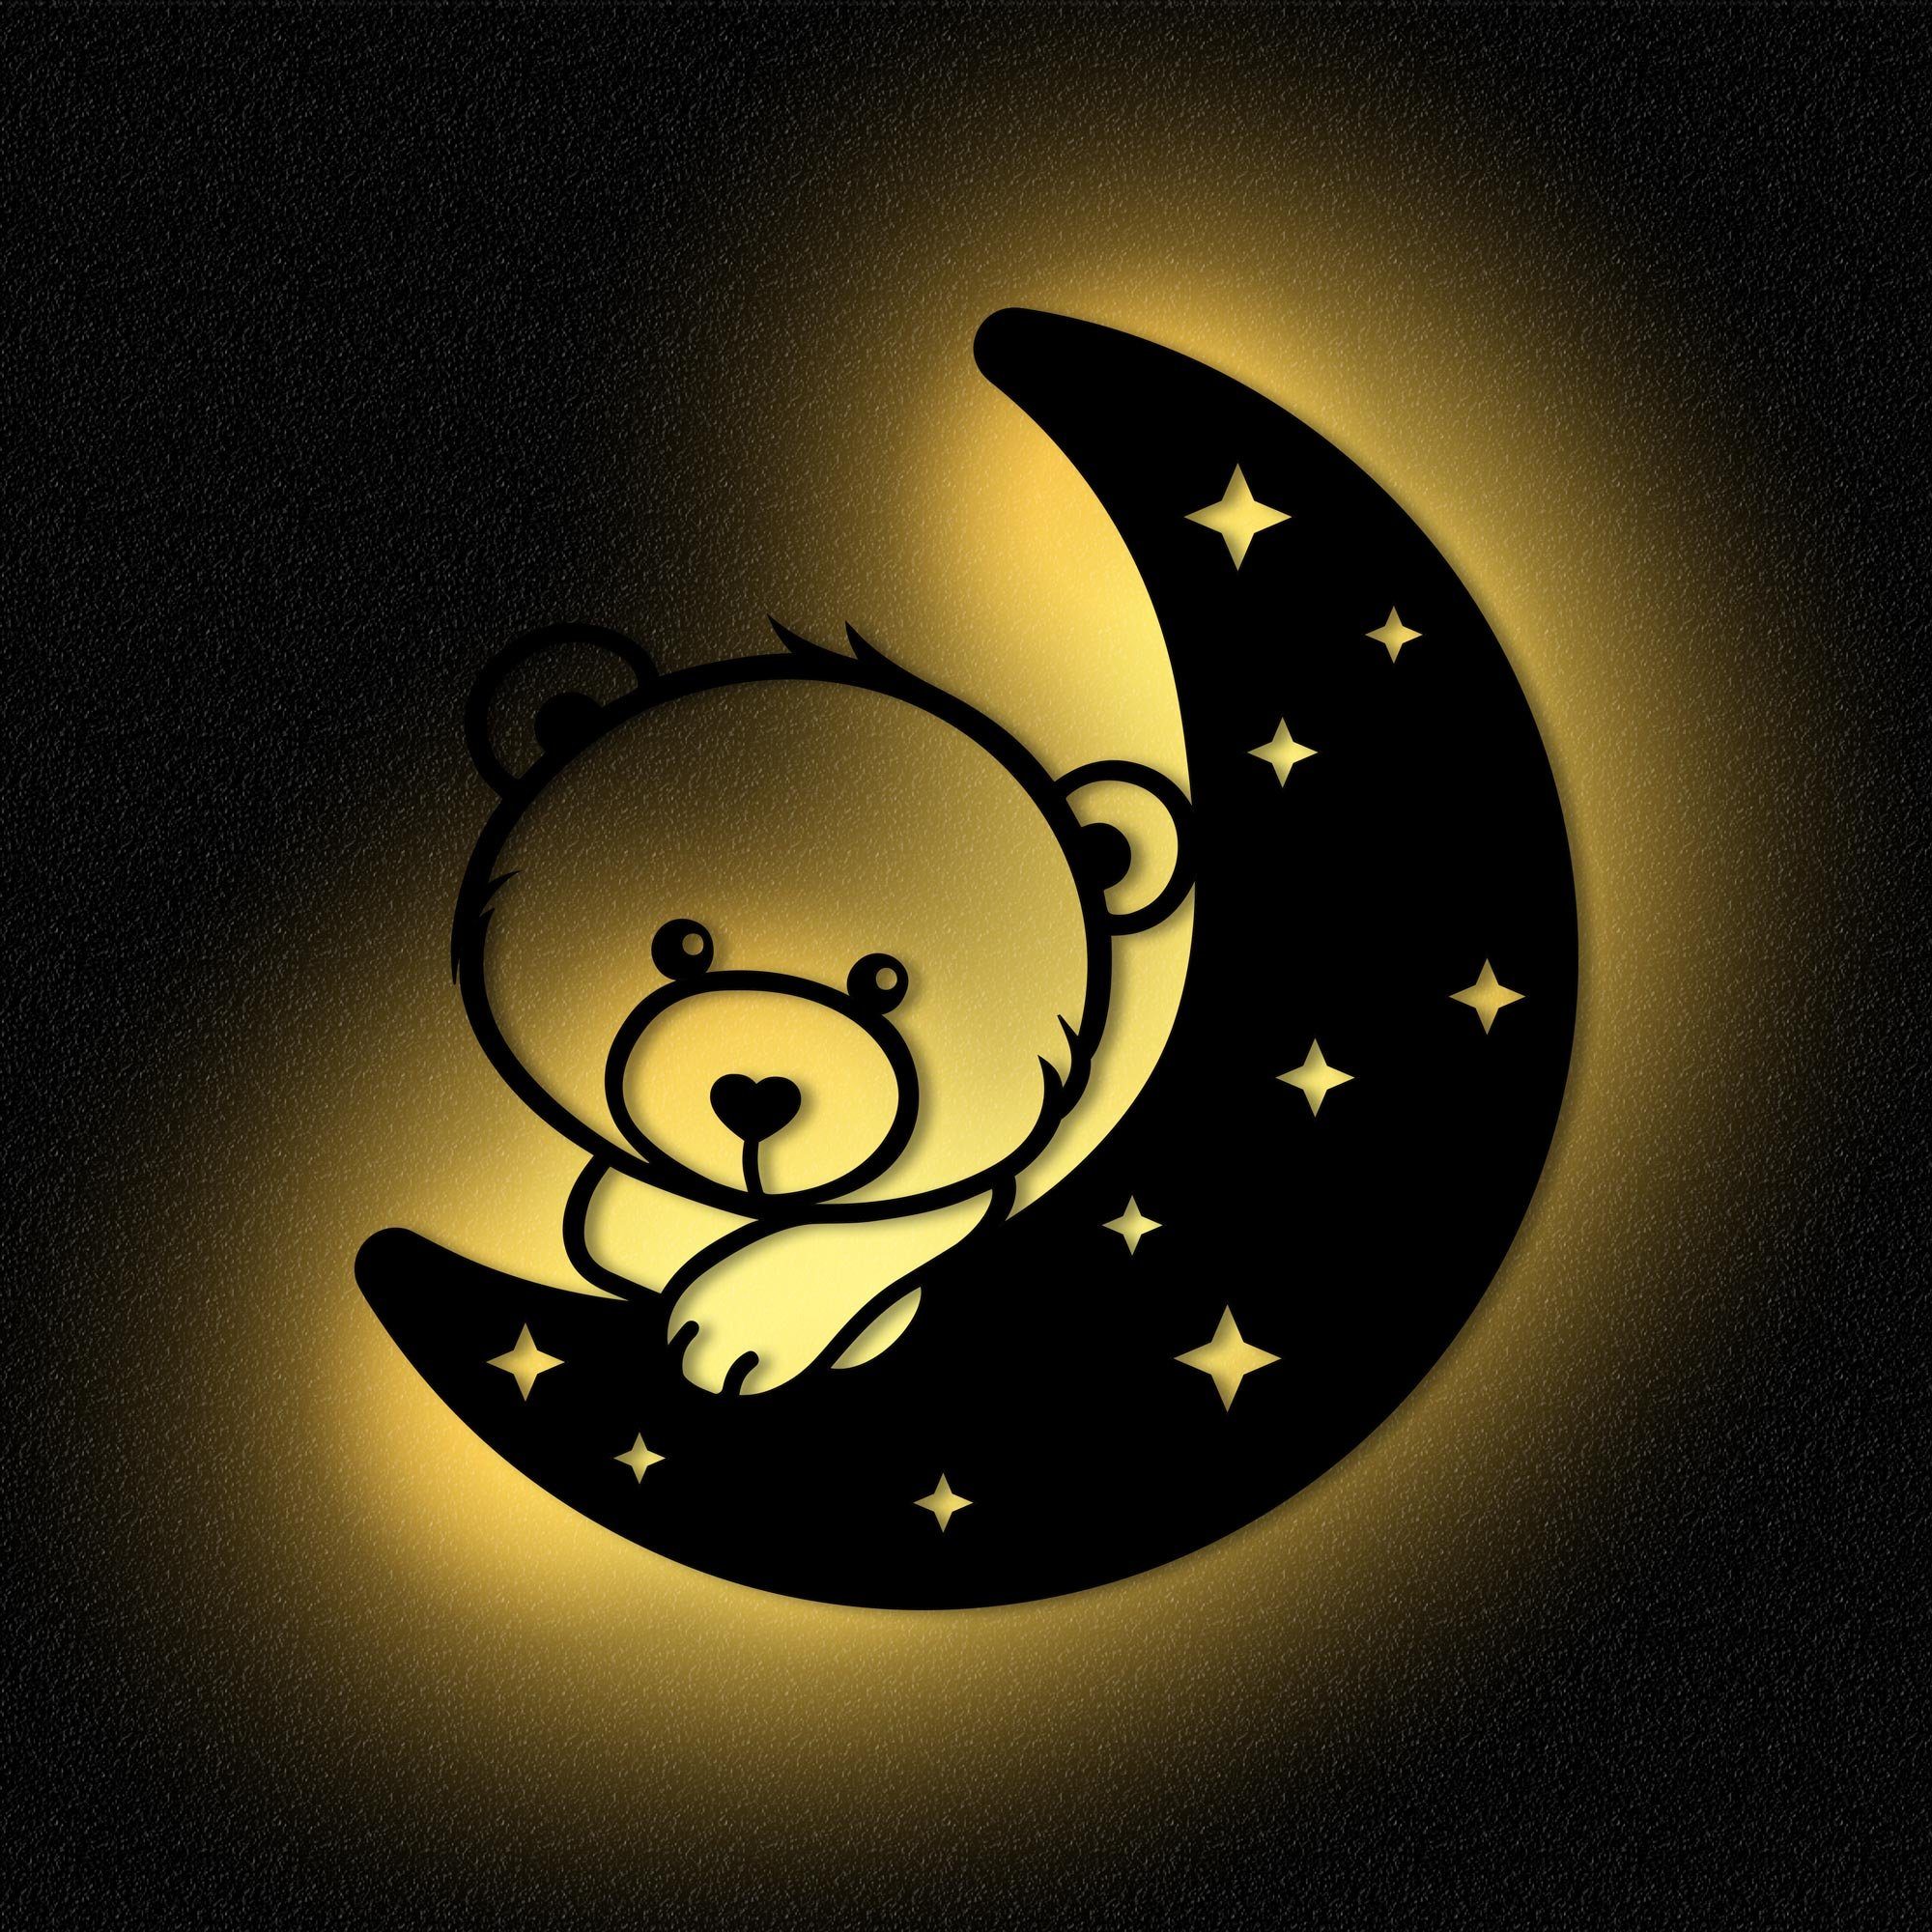 Namofactur LED Nachtlicht Teddy Mond Kinder integriert, Nachtlicht MDF I Warmweiß Holz, Kinderzimmer LED Wandlampe fest